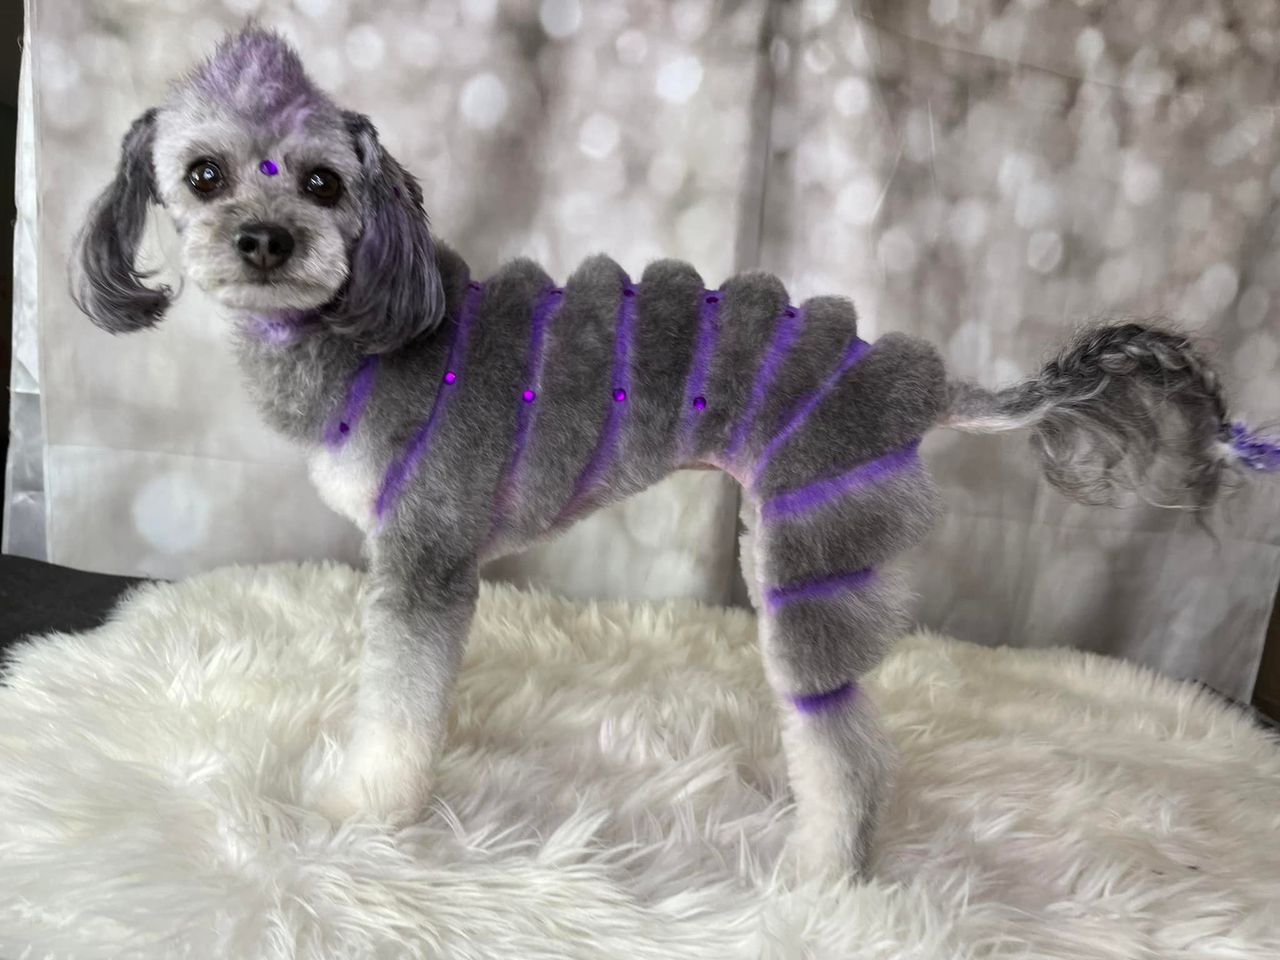 Concurso de peluquería canina con tinte seguro para mascotas.